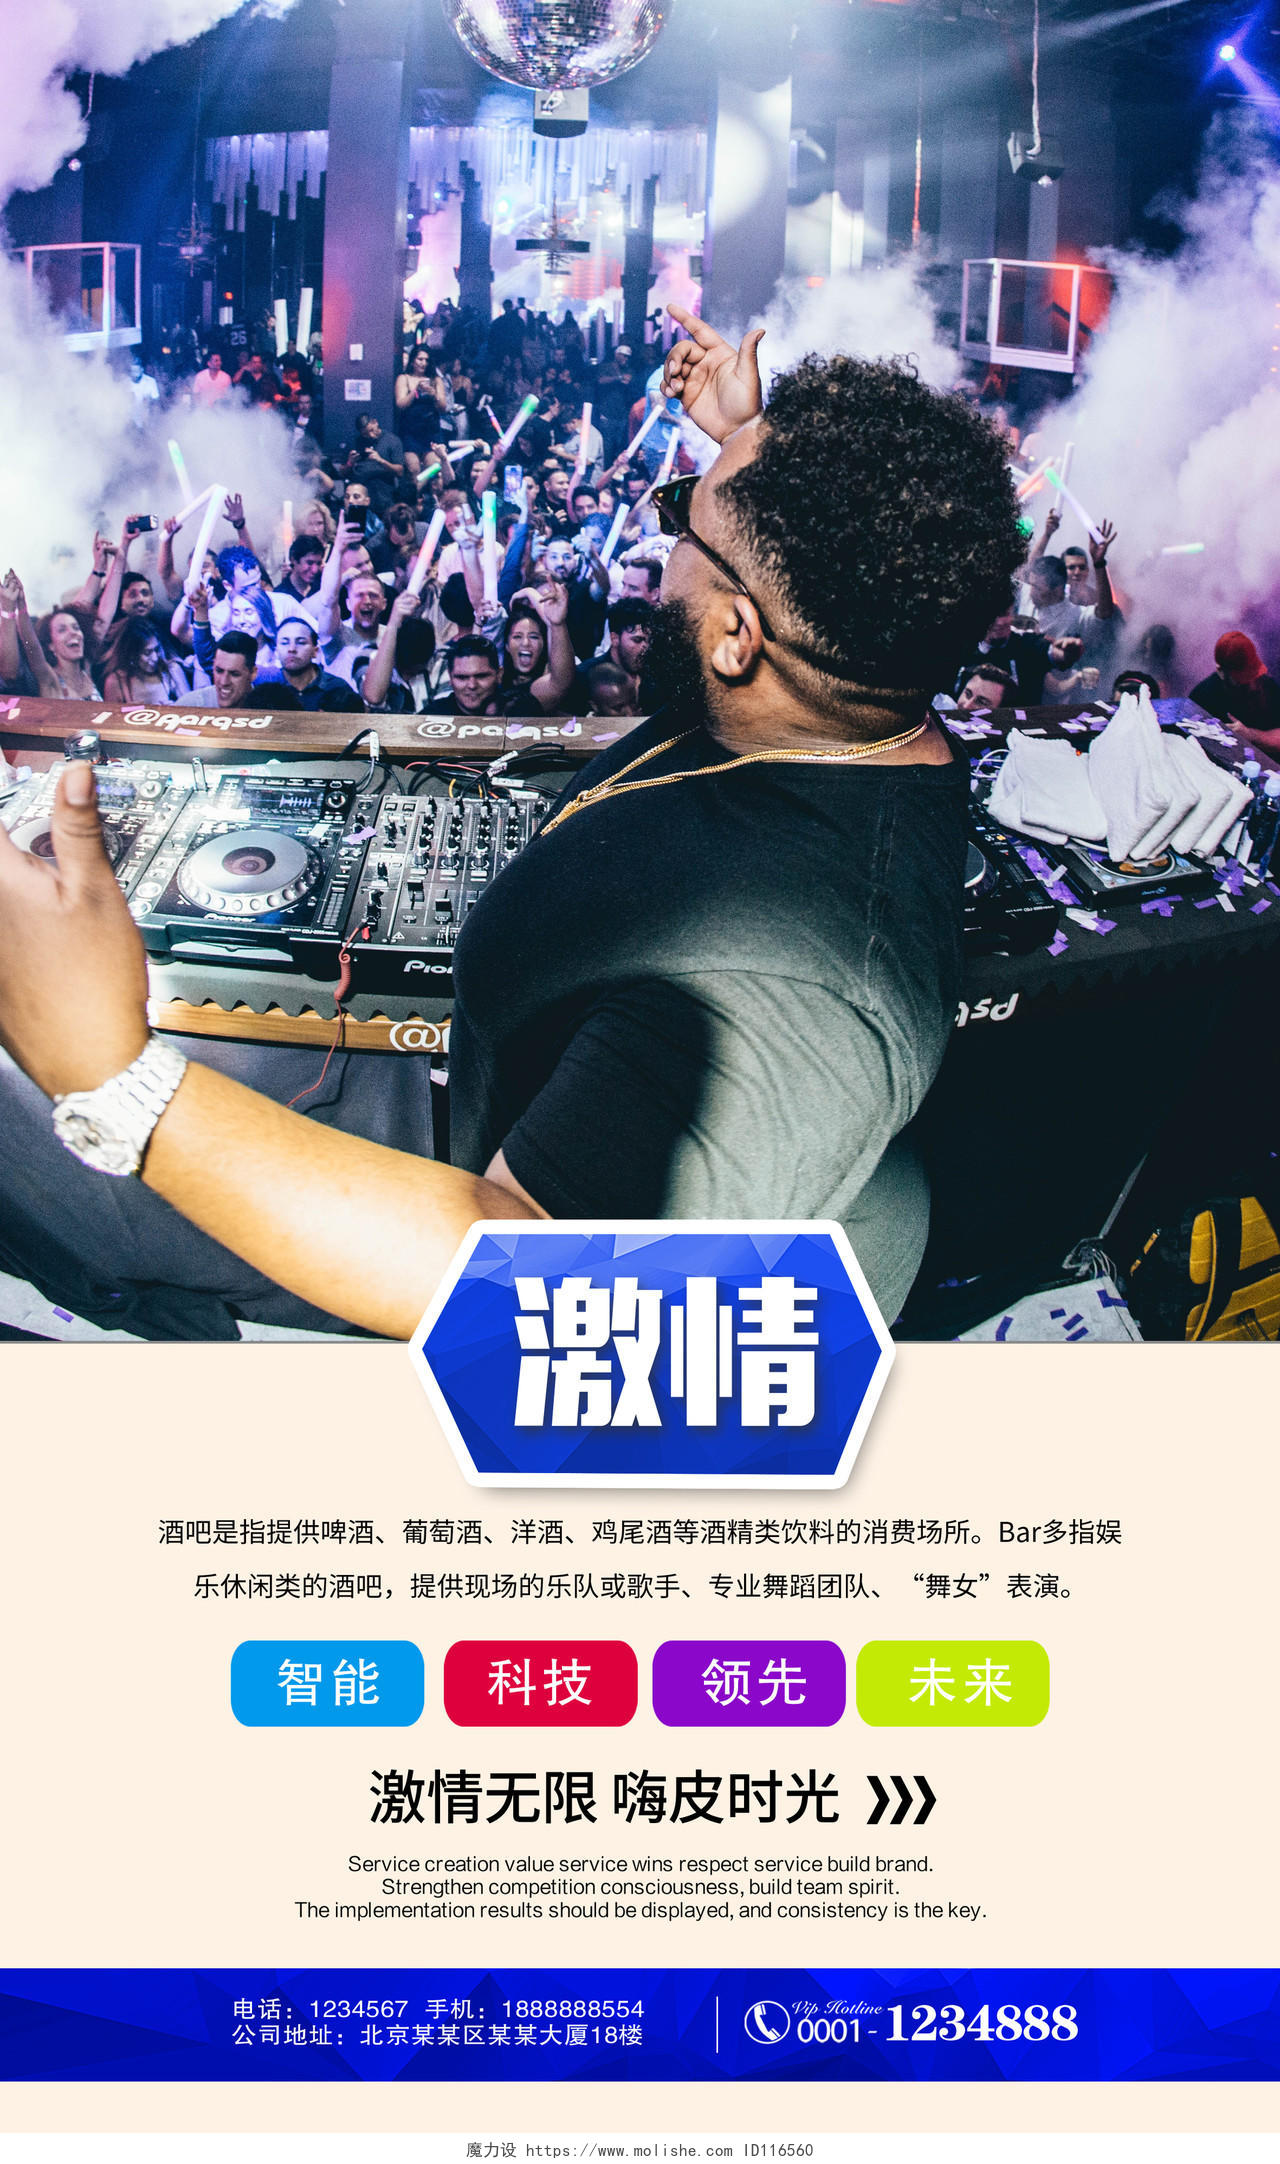 炫彩夜店酒吧音乐派对海报PSD展板模板